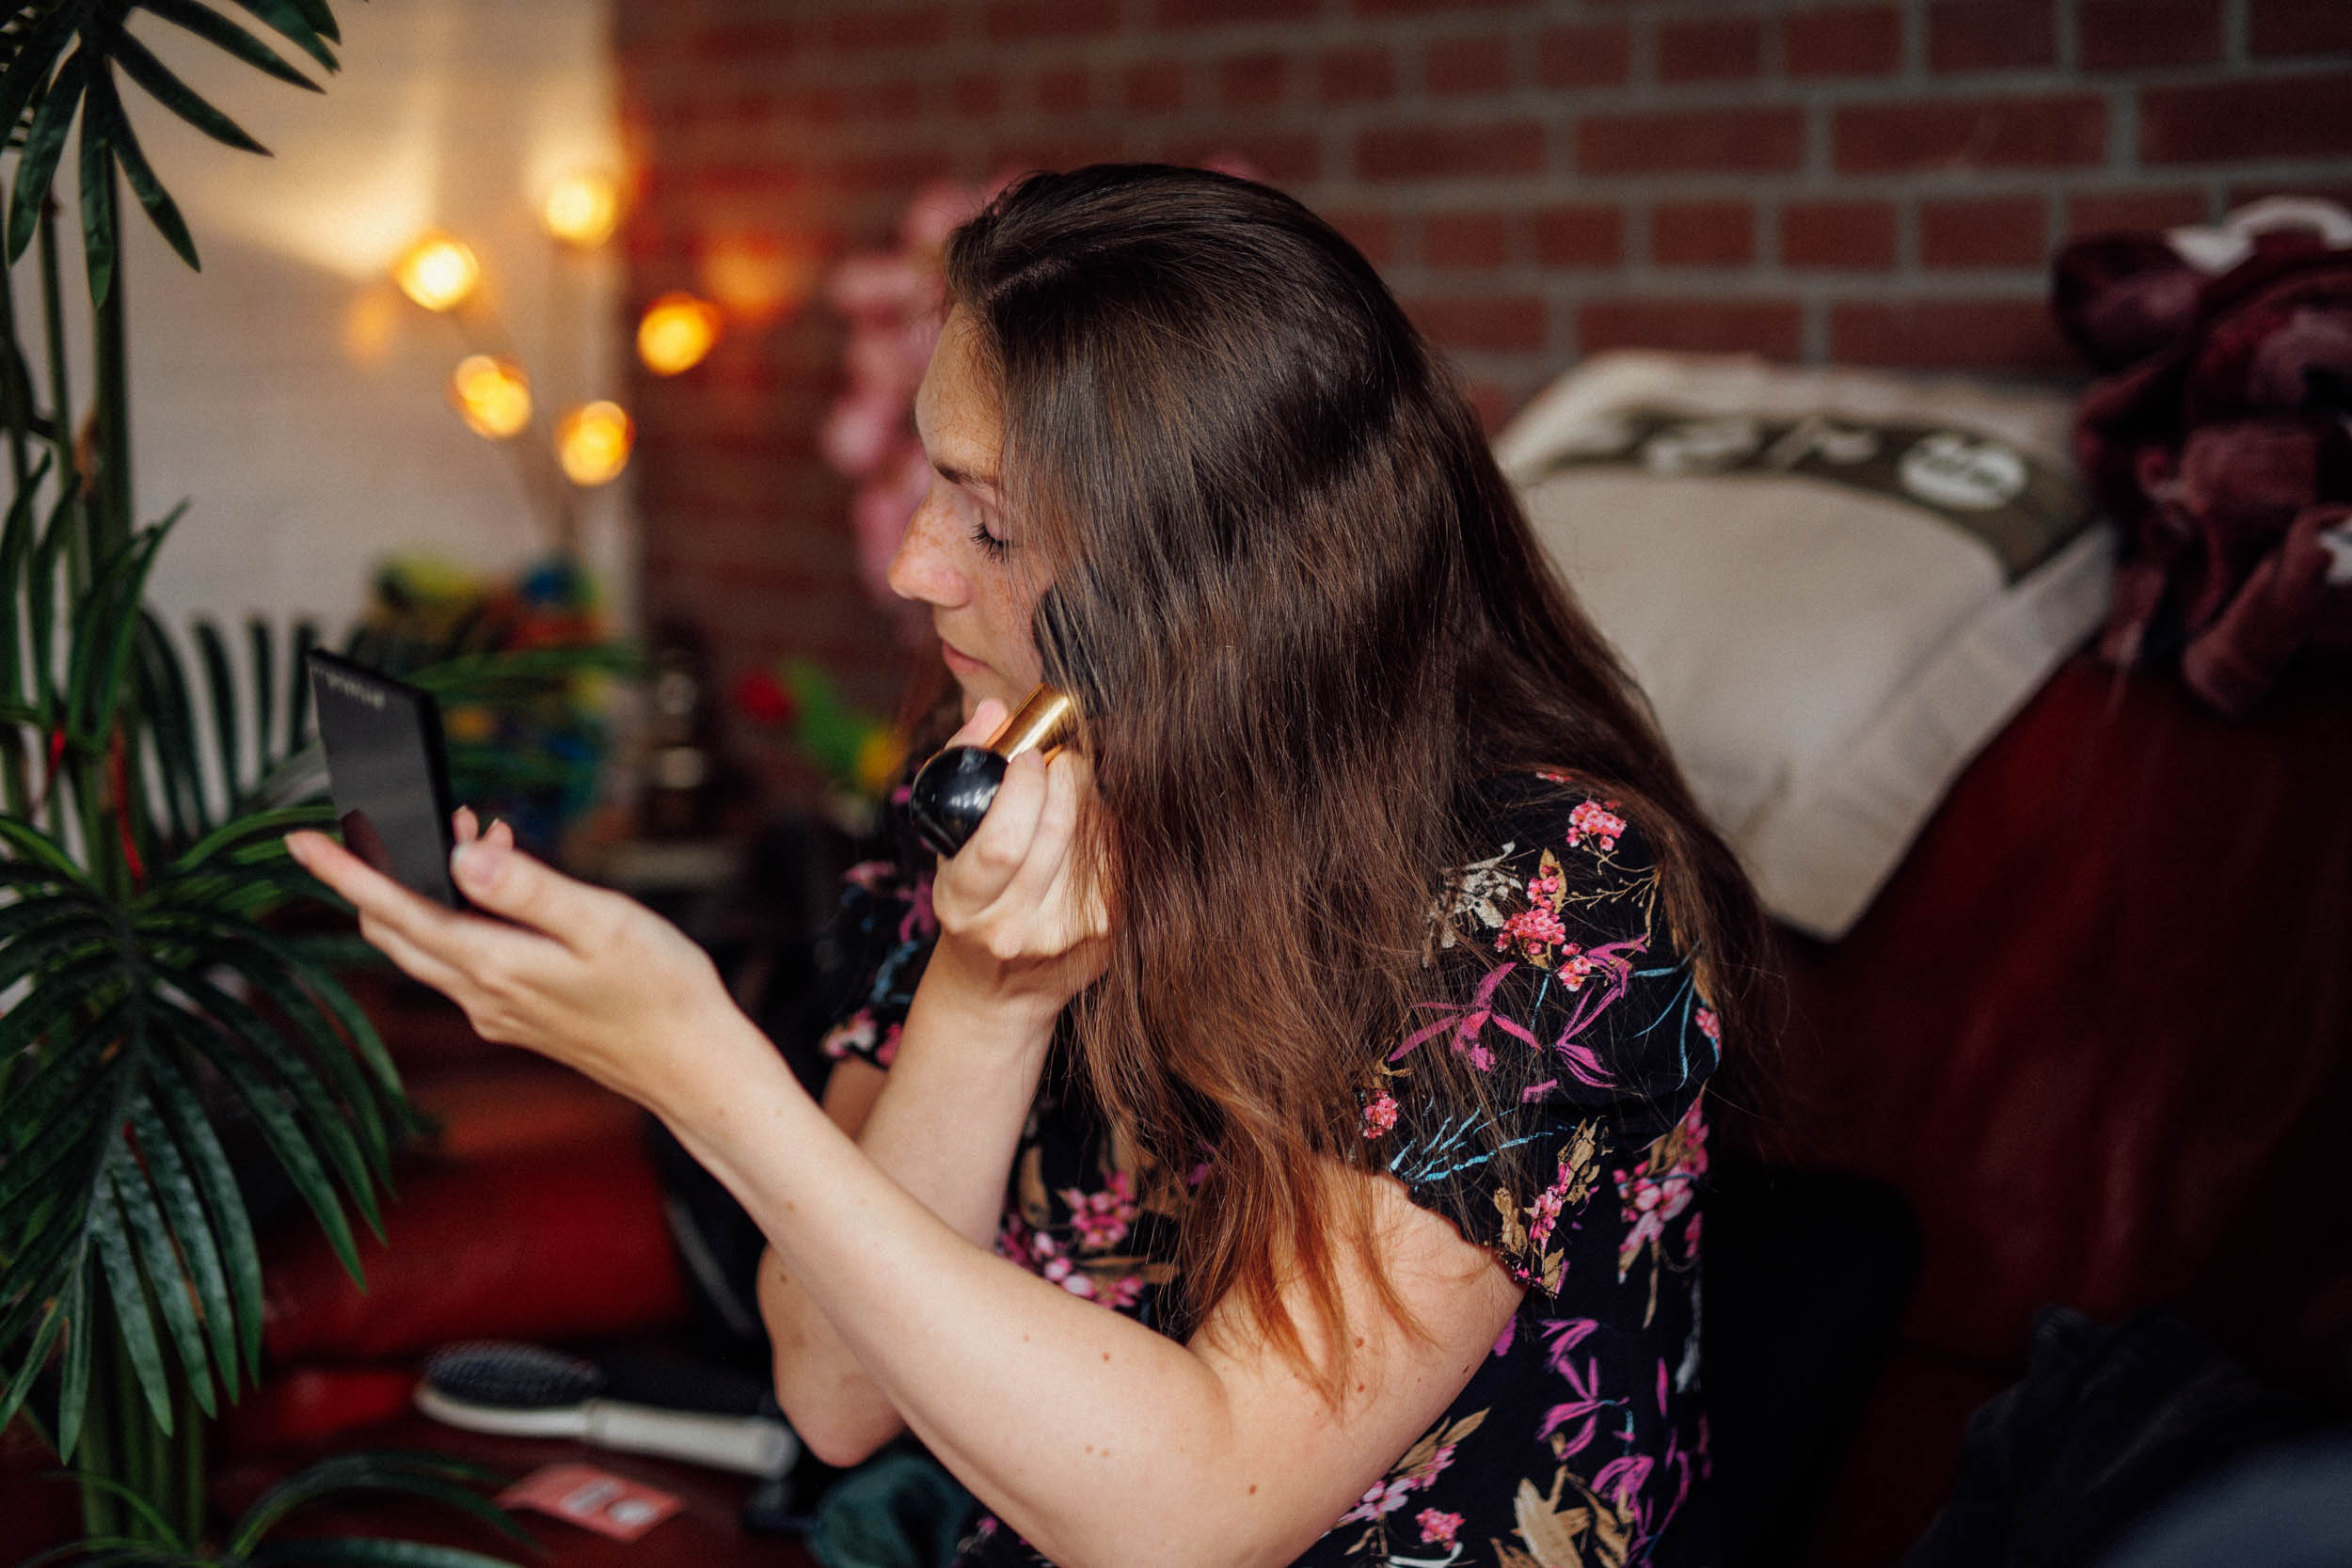 Een vrouw met lang haar brengt make-up aan terwijl ze in een handspiegel kijkt in een gezellige kamer met zachte verlichting en een plant, waardoor een intieme boudoirfotoscène ontstaat.